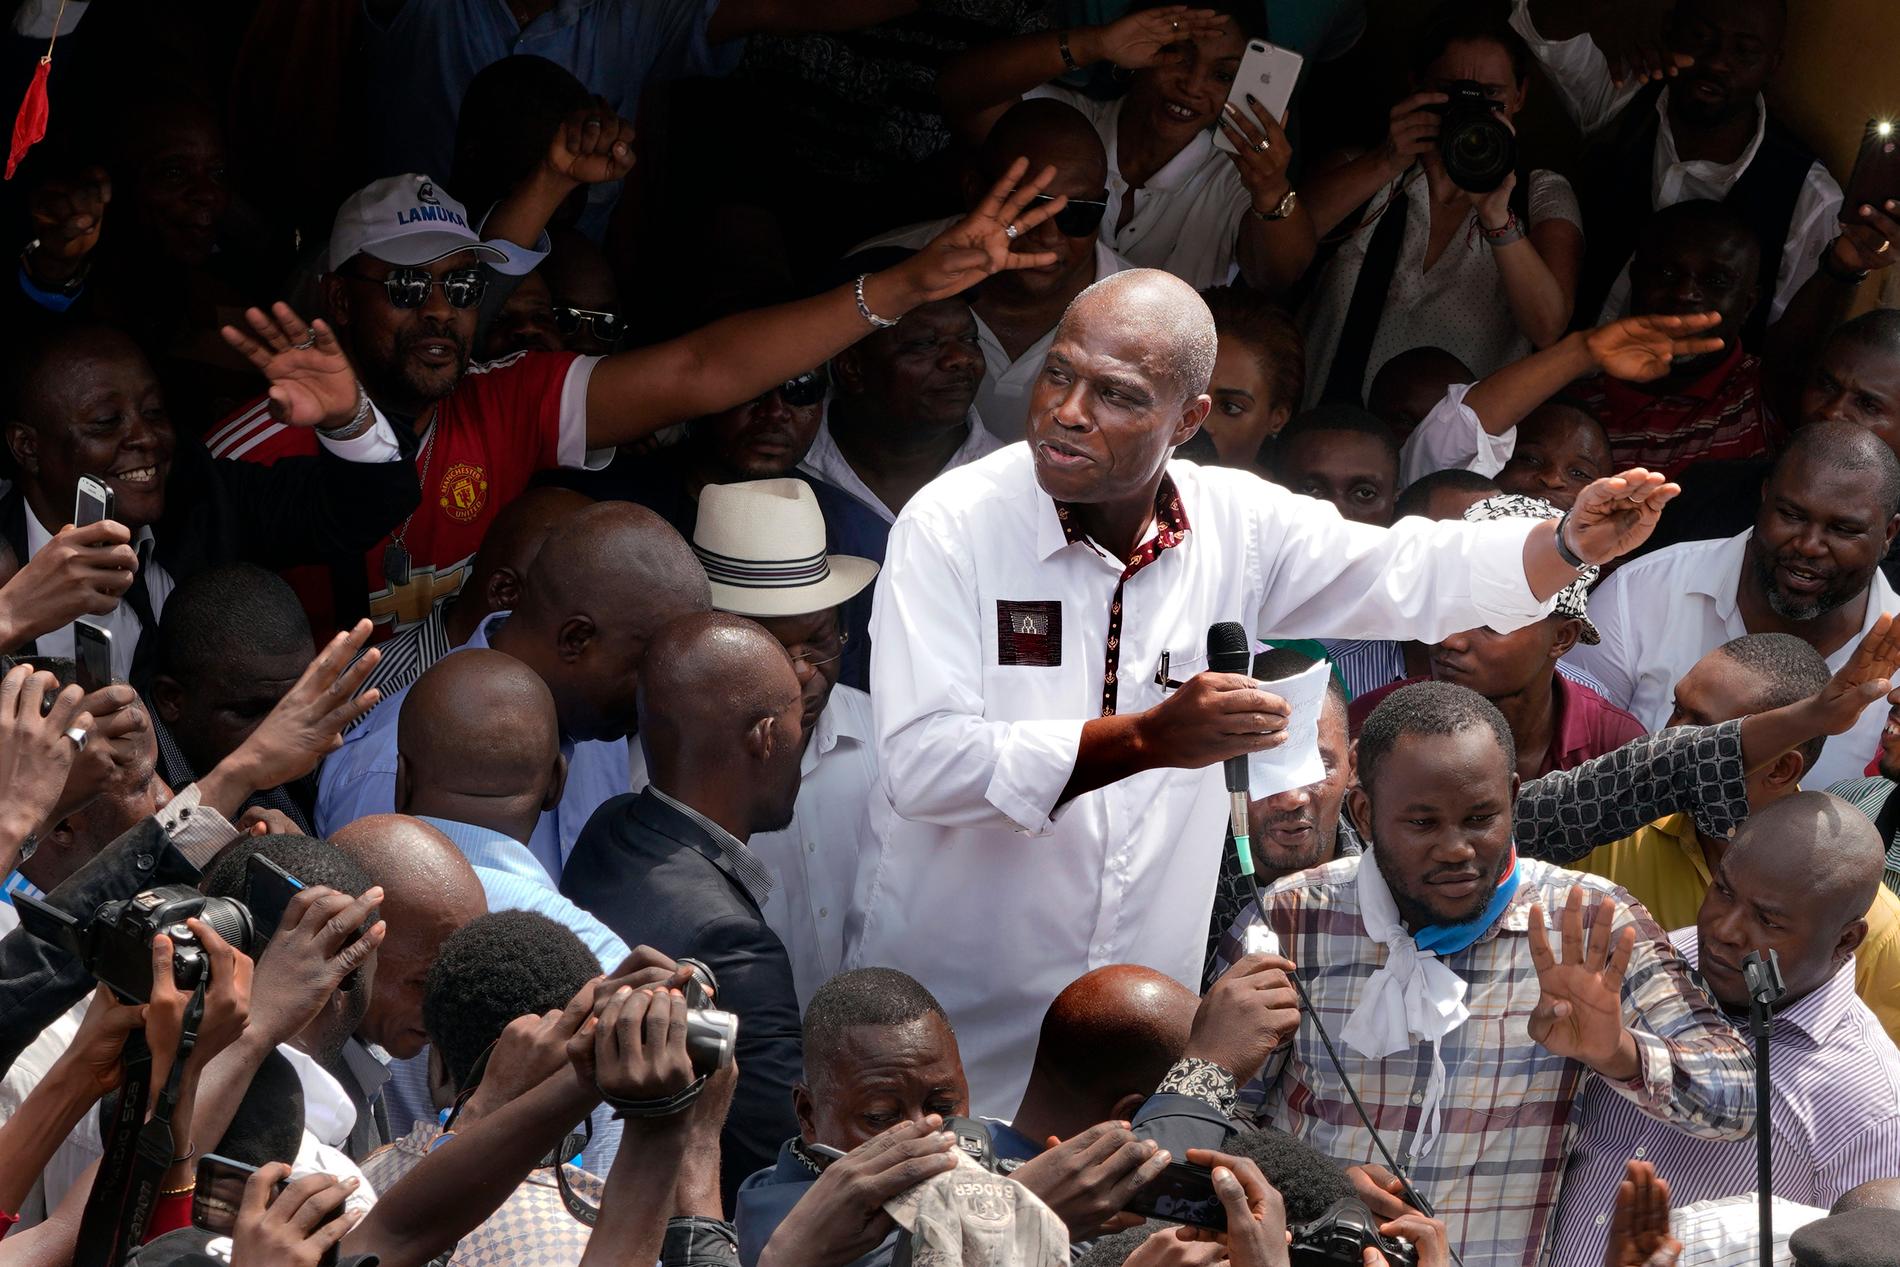 Den officiellt besegrade oppositionspolitiekern Martin Fayulu håller ett möte med sin anhängare efter valet i Kongo-Kinshasa. Resultatet ifrågasätts stort internationellt.